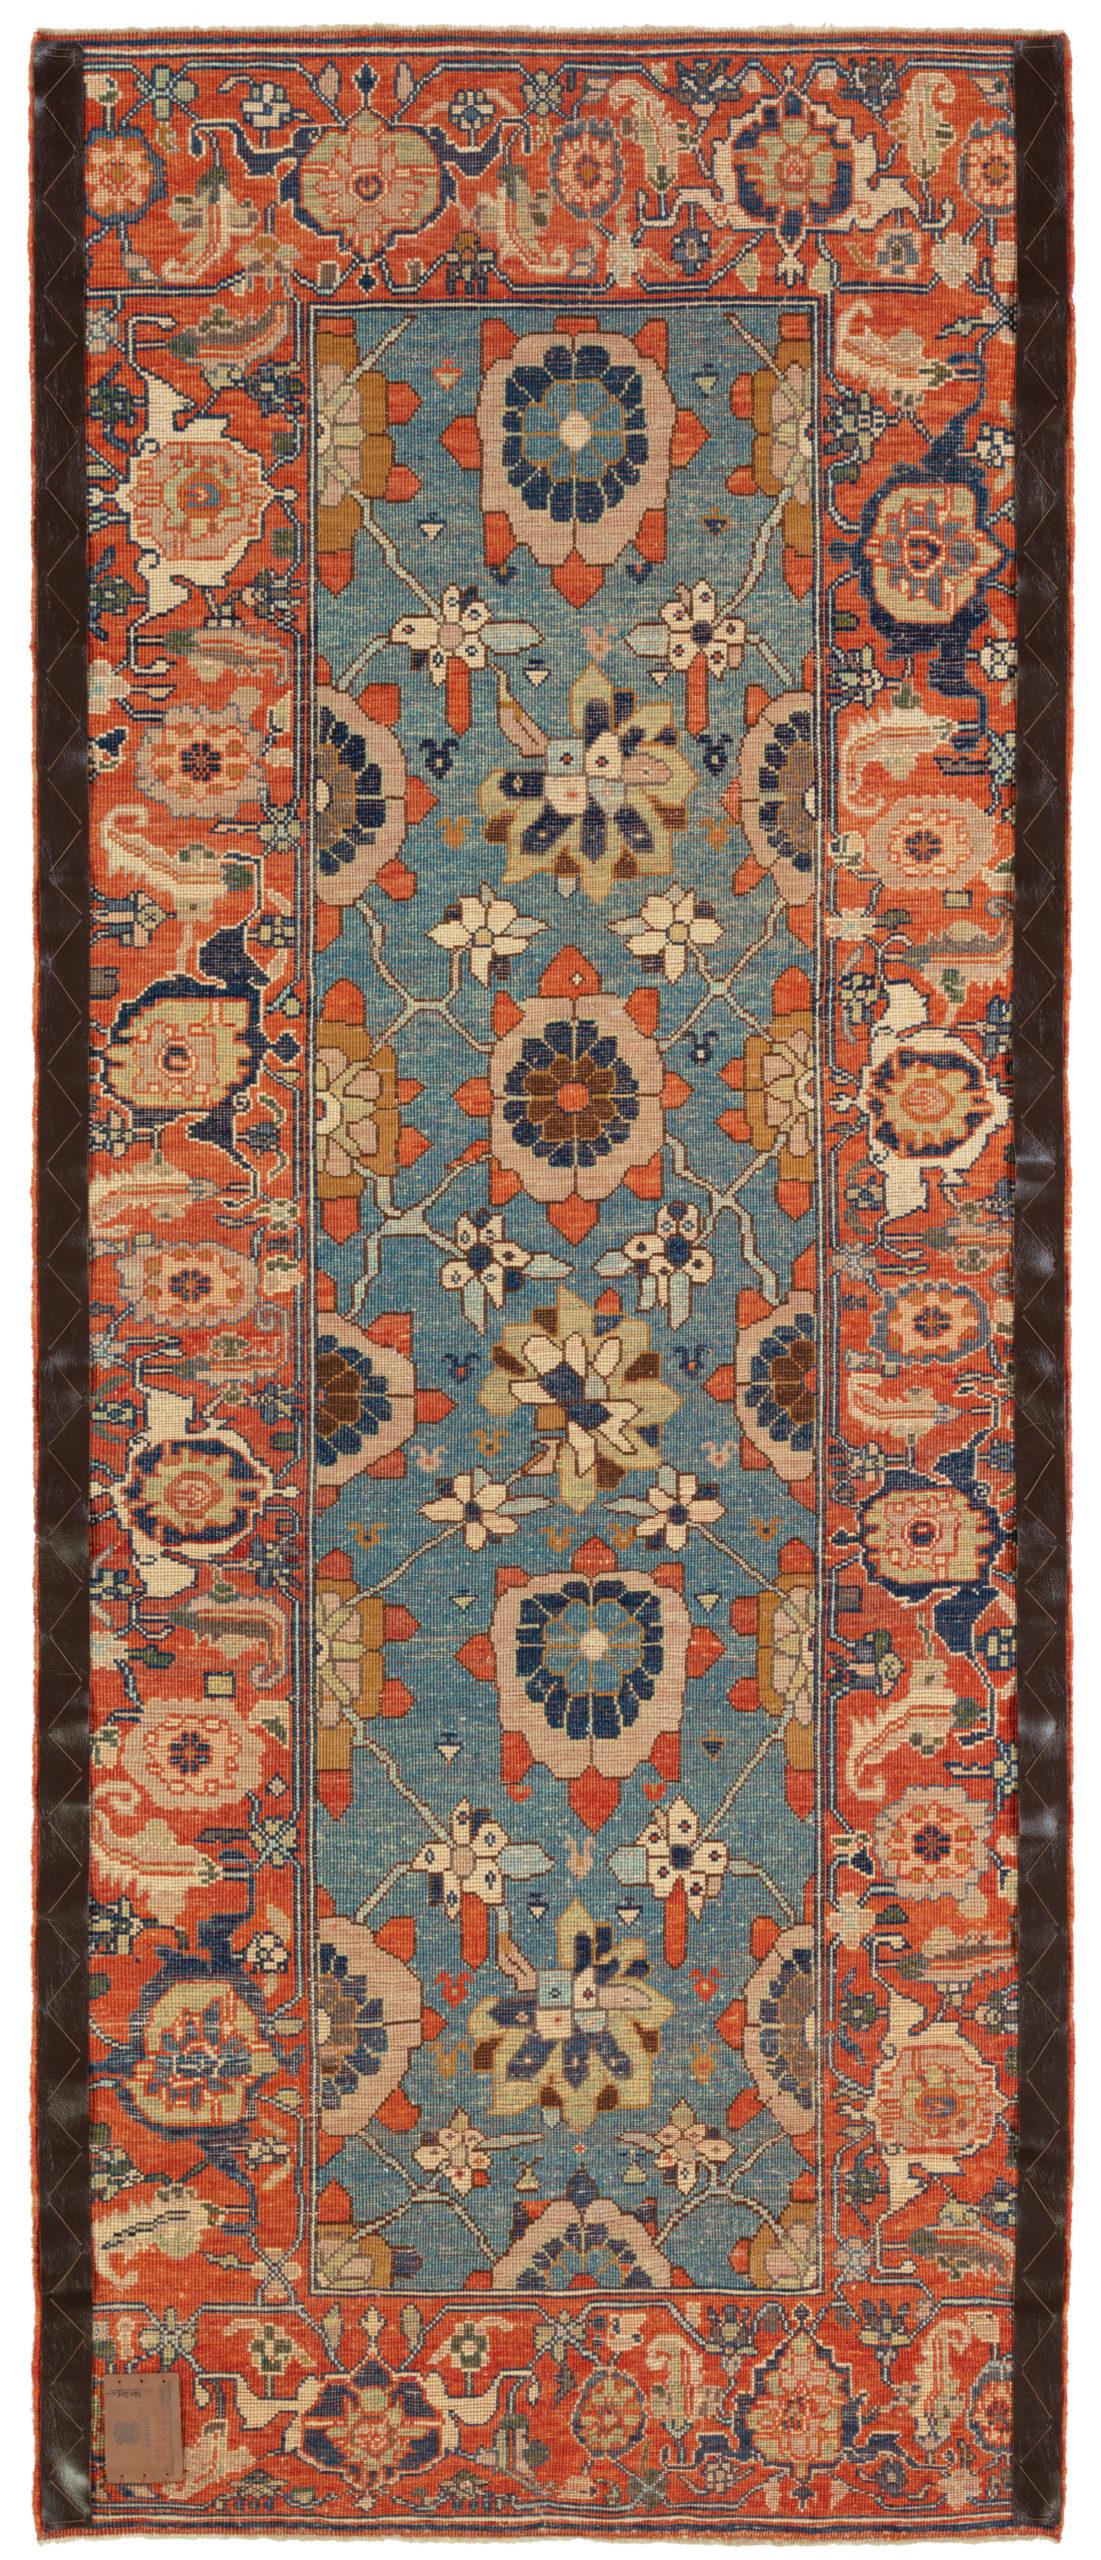 Das Design des Teppichs stammt aus dem Buch Antique Rugs of Kurdistan A Historical Legacy of Woven Art, James D. Burns, 2002 nr.4. Es handelt sich um ein exklusives Beispiel eines Mina Khani-Gitterdesign-Teppichs aus der Mitte des 19. Jahrhunderts